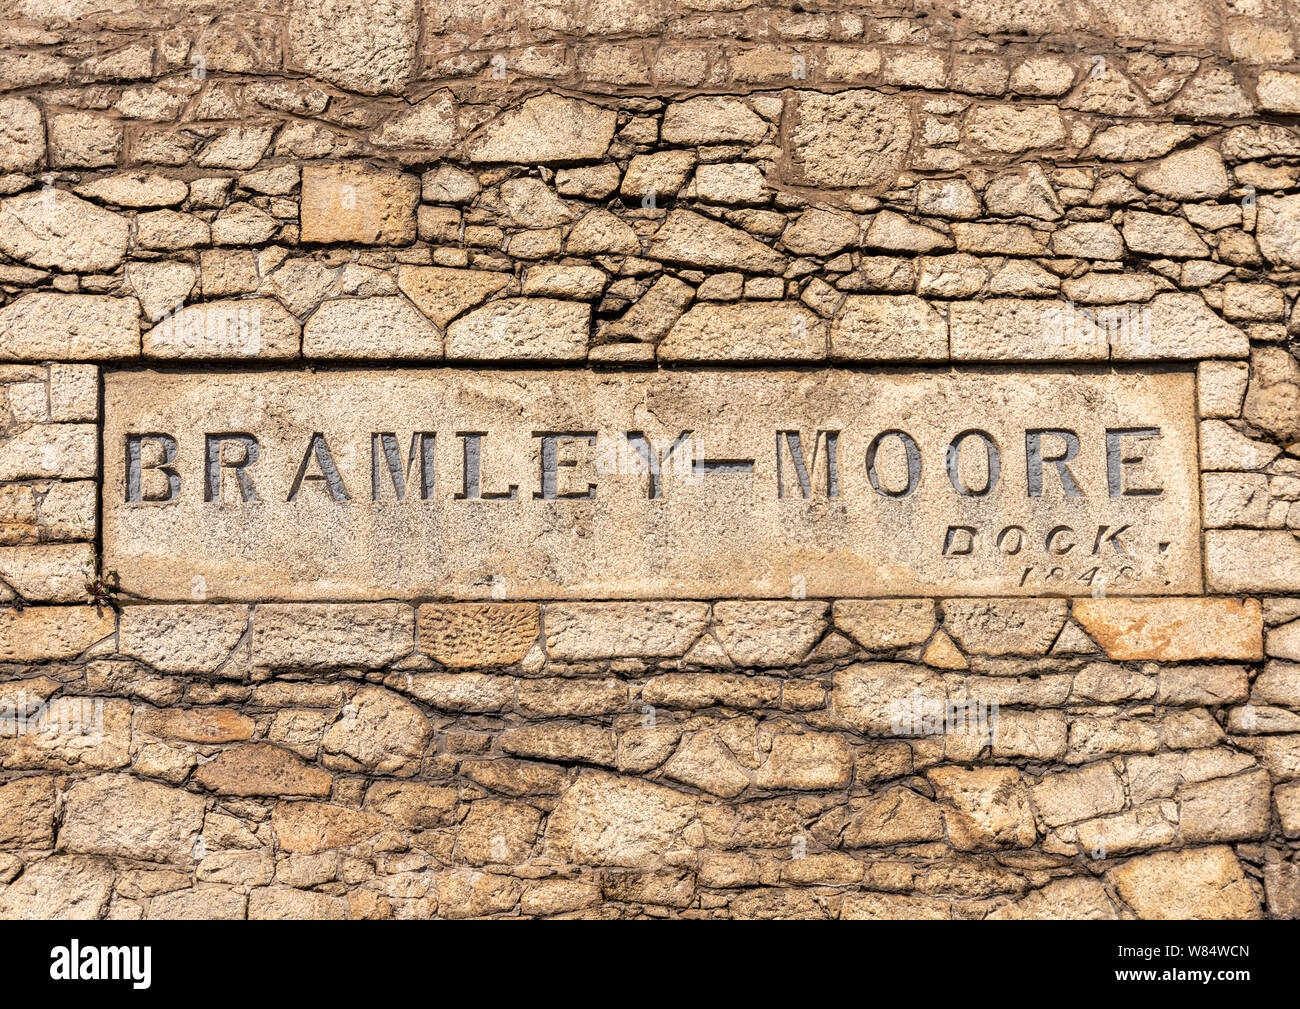 Bramley Moore Dock Liverpool, future maison pour le nouveau stade d'Everton FC Banque D'Images